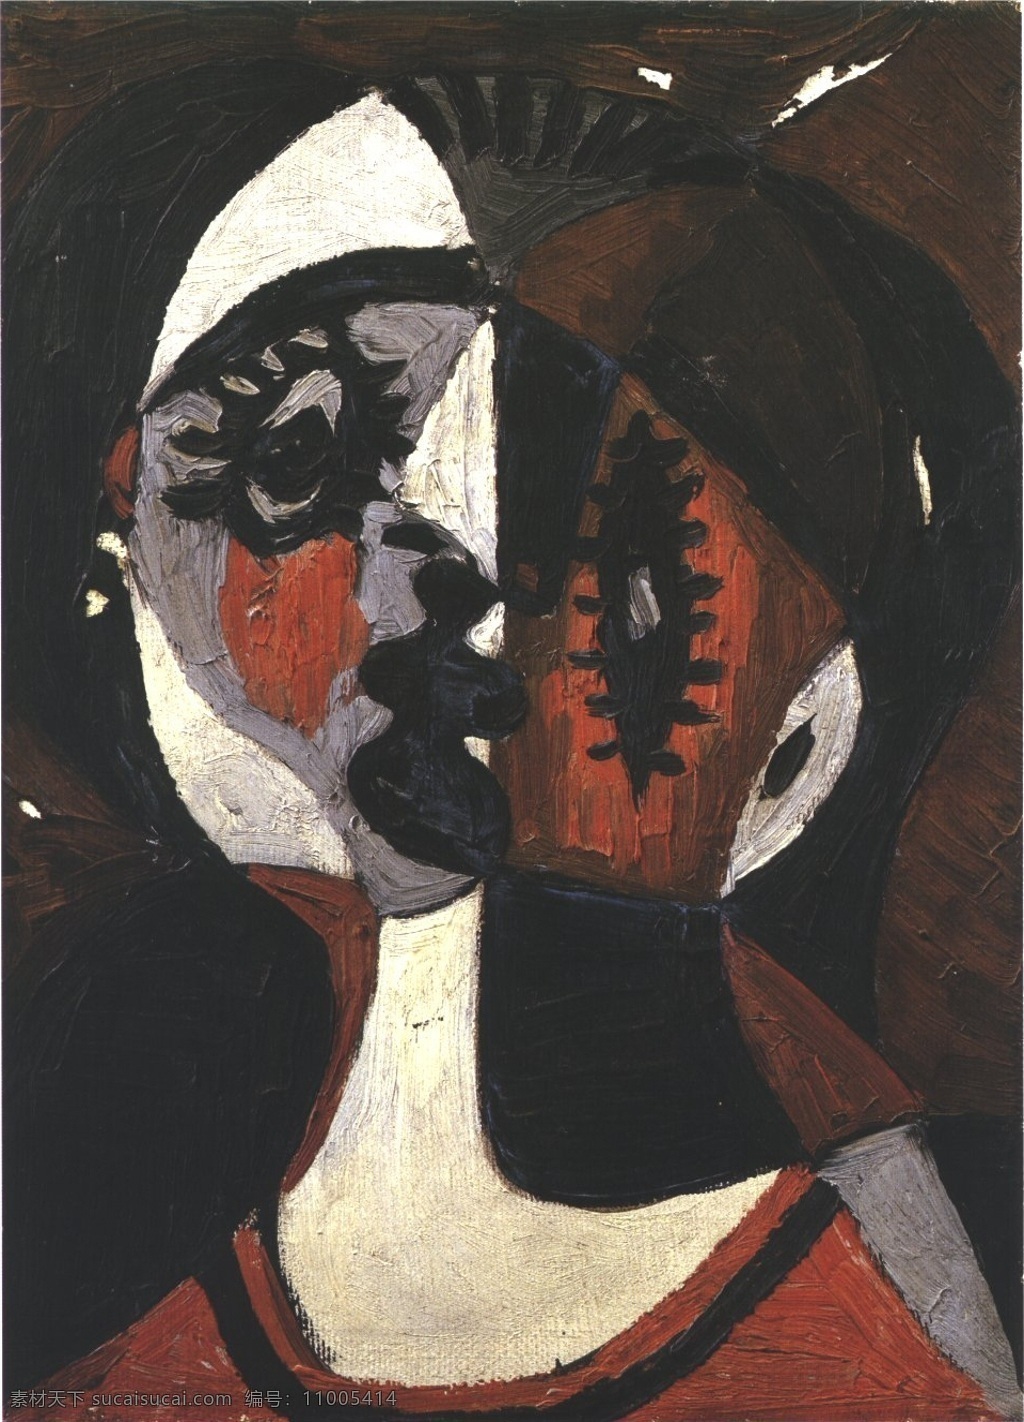 visage1 西班牙 画家 巴勃罗 毕加索 抽象 油画 人物 人体 装饰画 1926 装饰素材